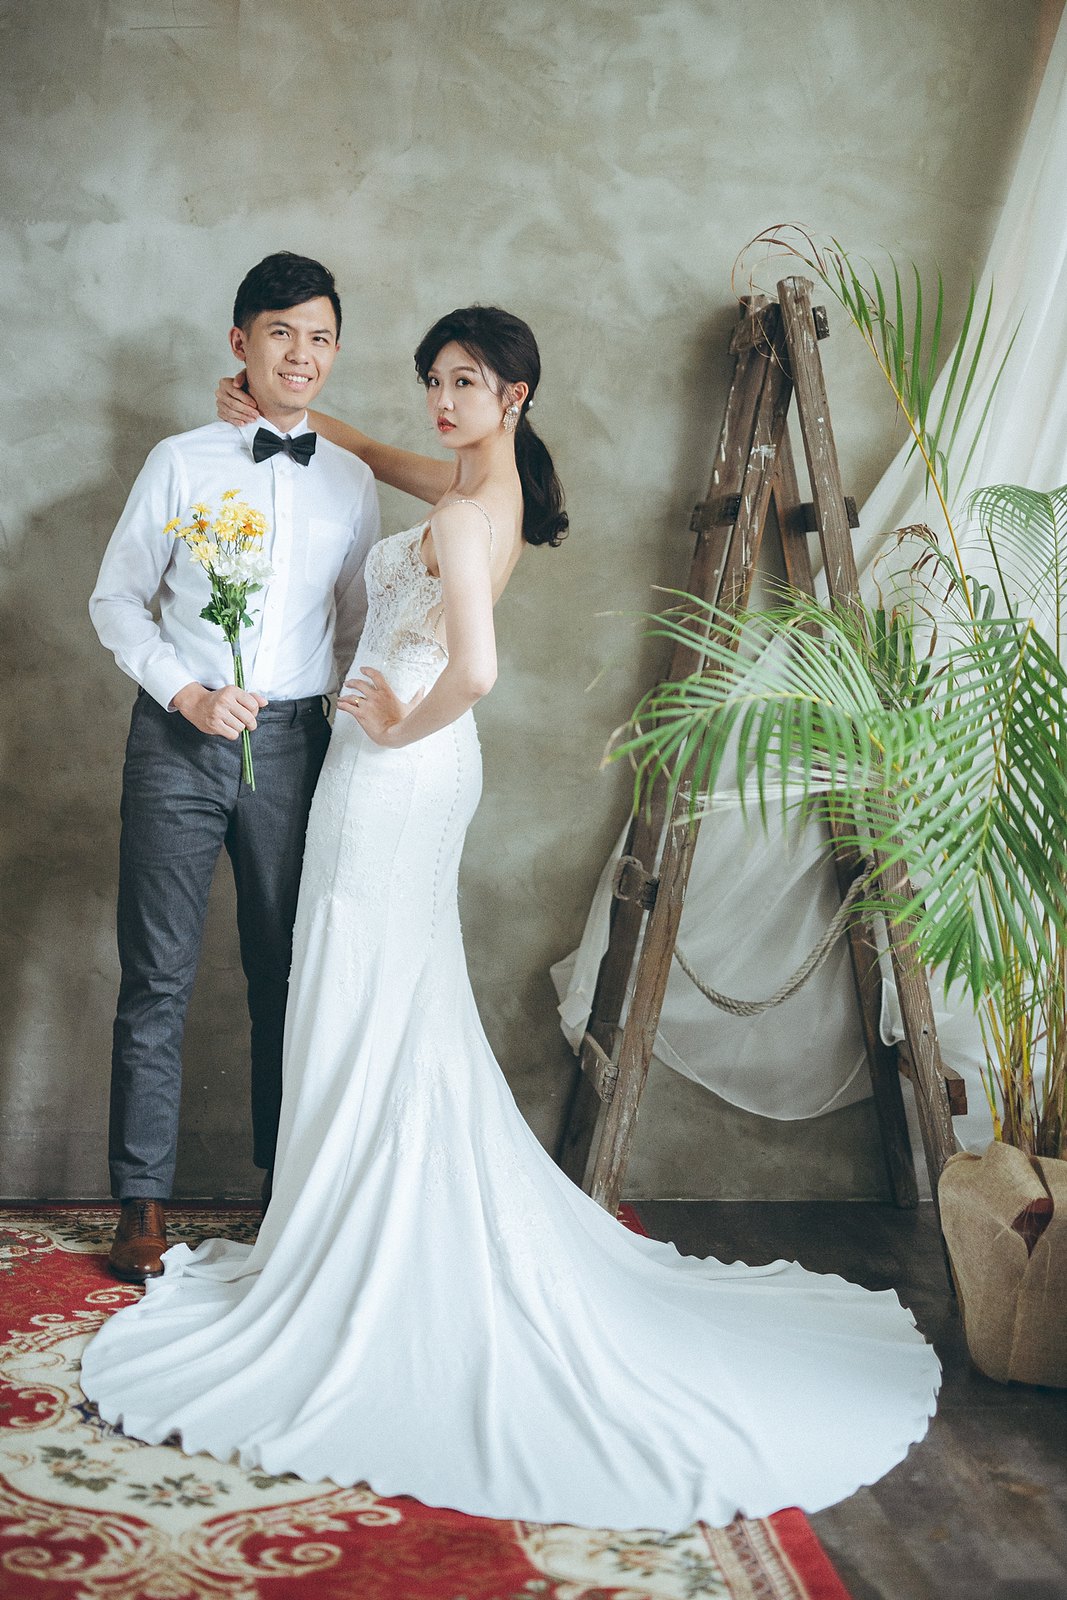 【婚紗】Vincent & Laura / 婚紗意象 / EASTERN WEDDING studio